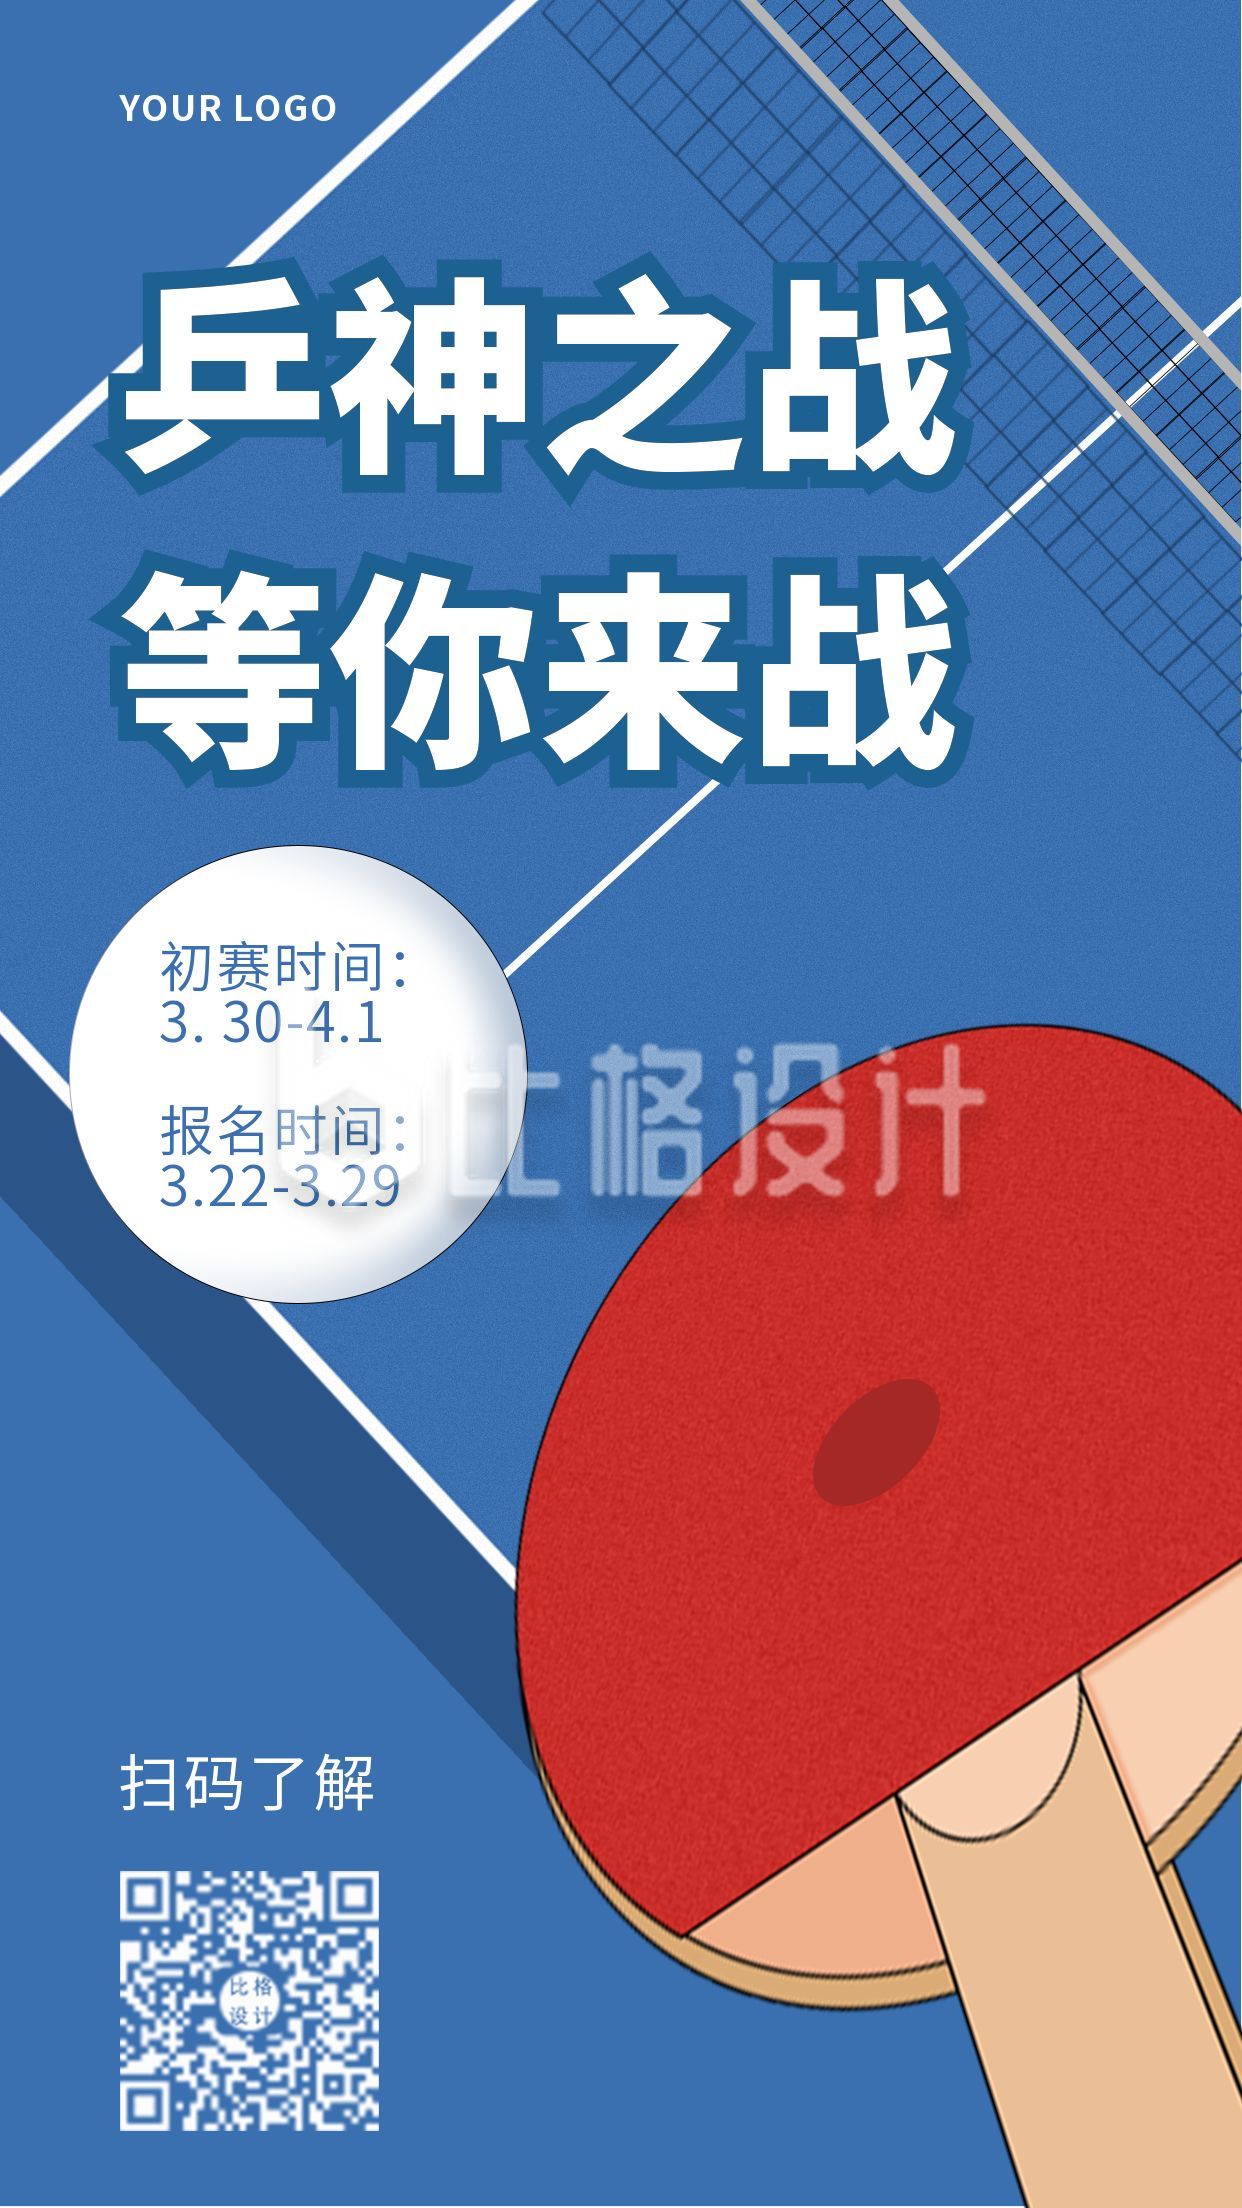 乒乓球比赛招募活动手机海报